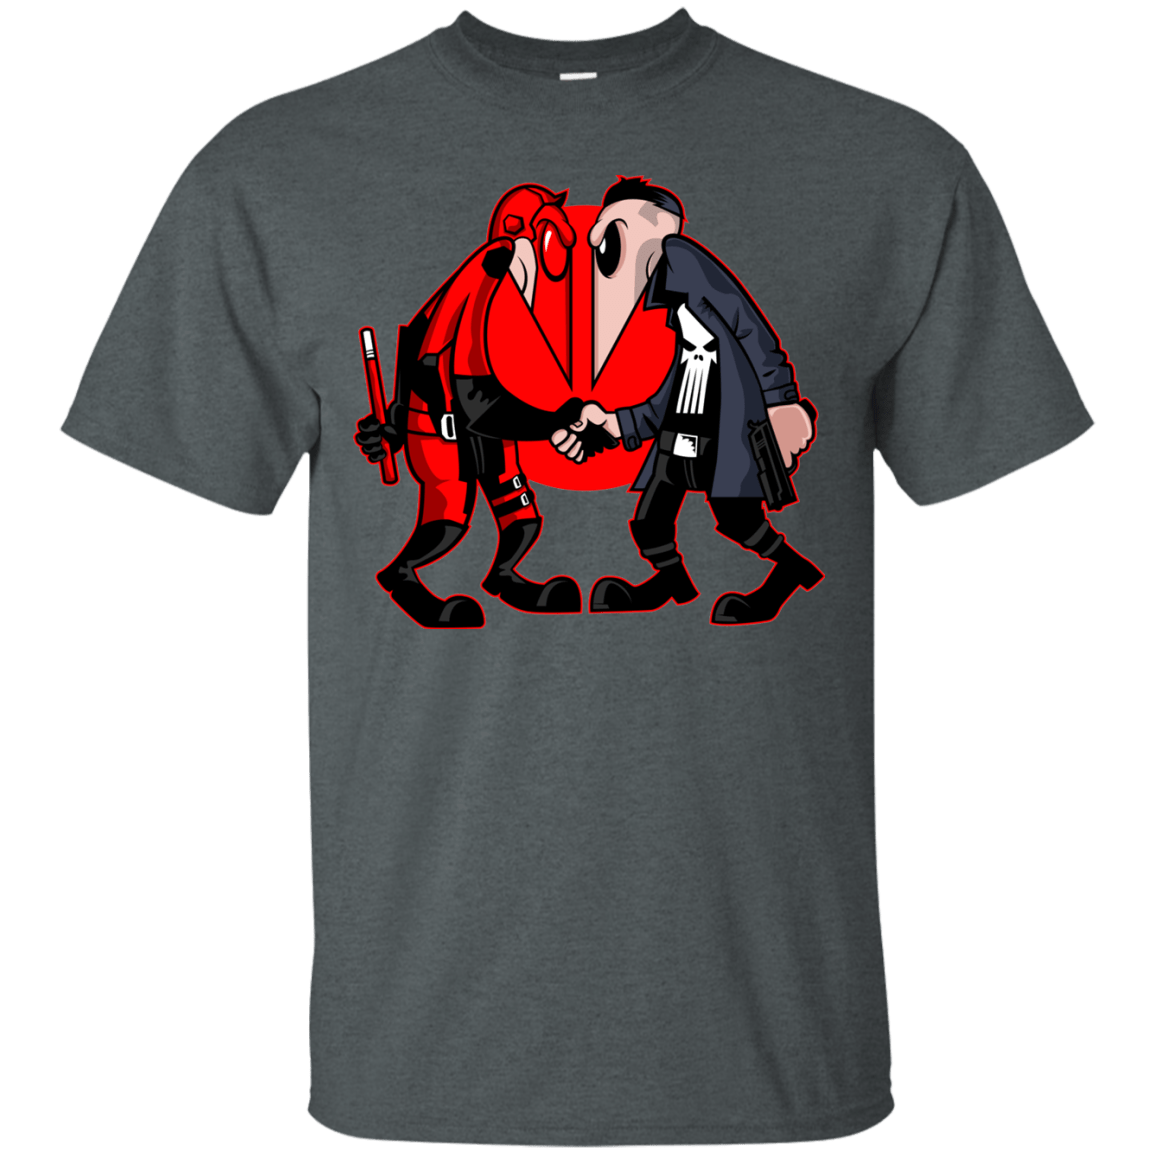 T-Shirts Dark Heather / S Hero vs Antihero T-Shirt